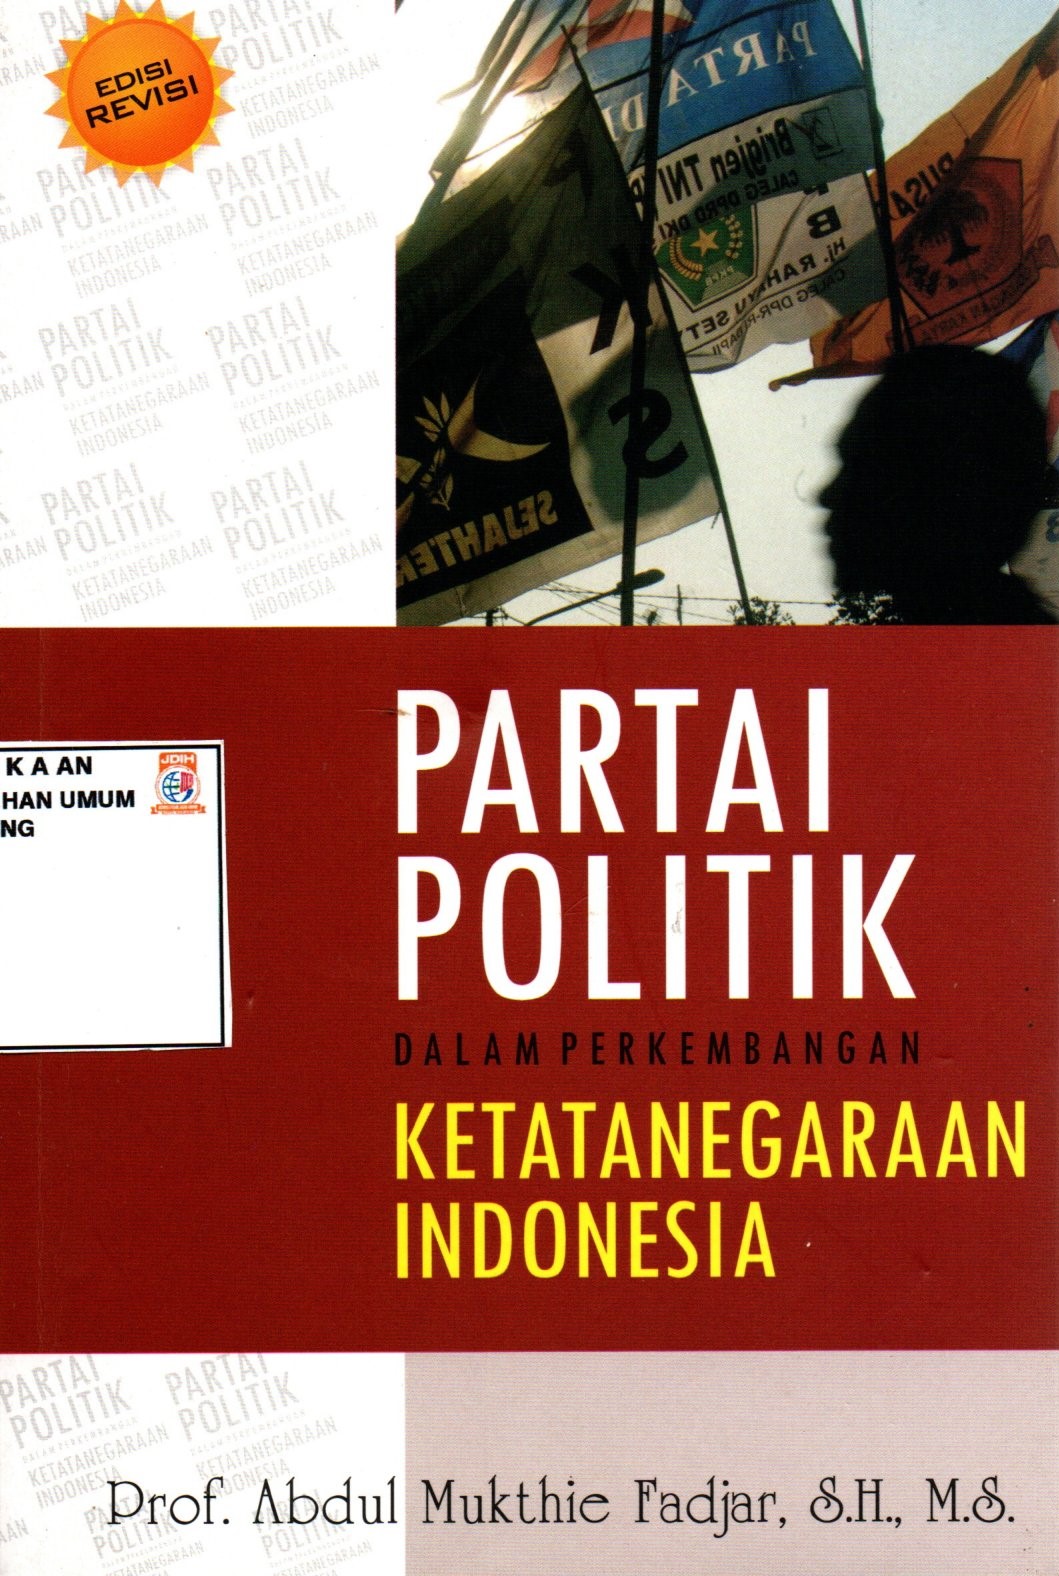 PARTAI POLITIK DALAM PERKEMBANGAN KETATANEGARAAN INDONESIA